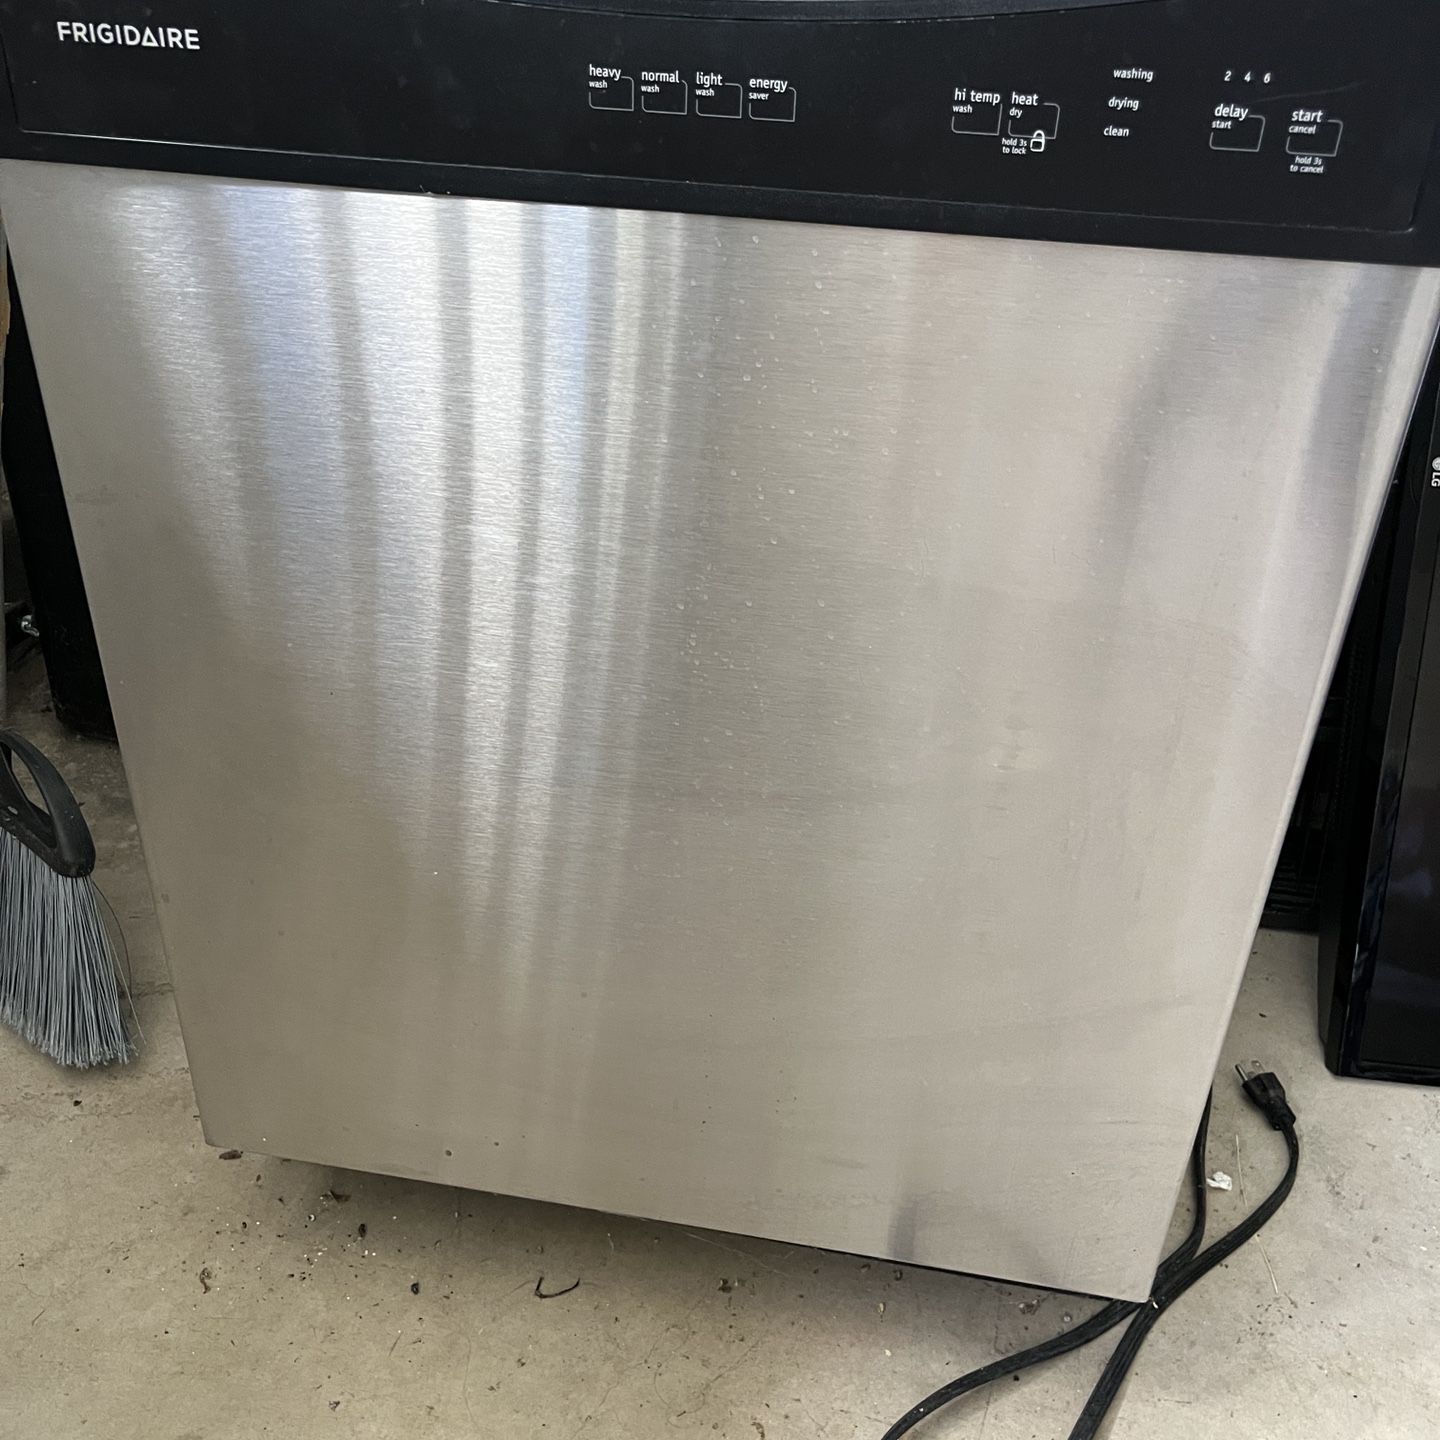 Frigidaire Dishwasher